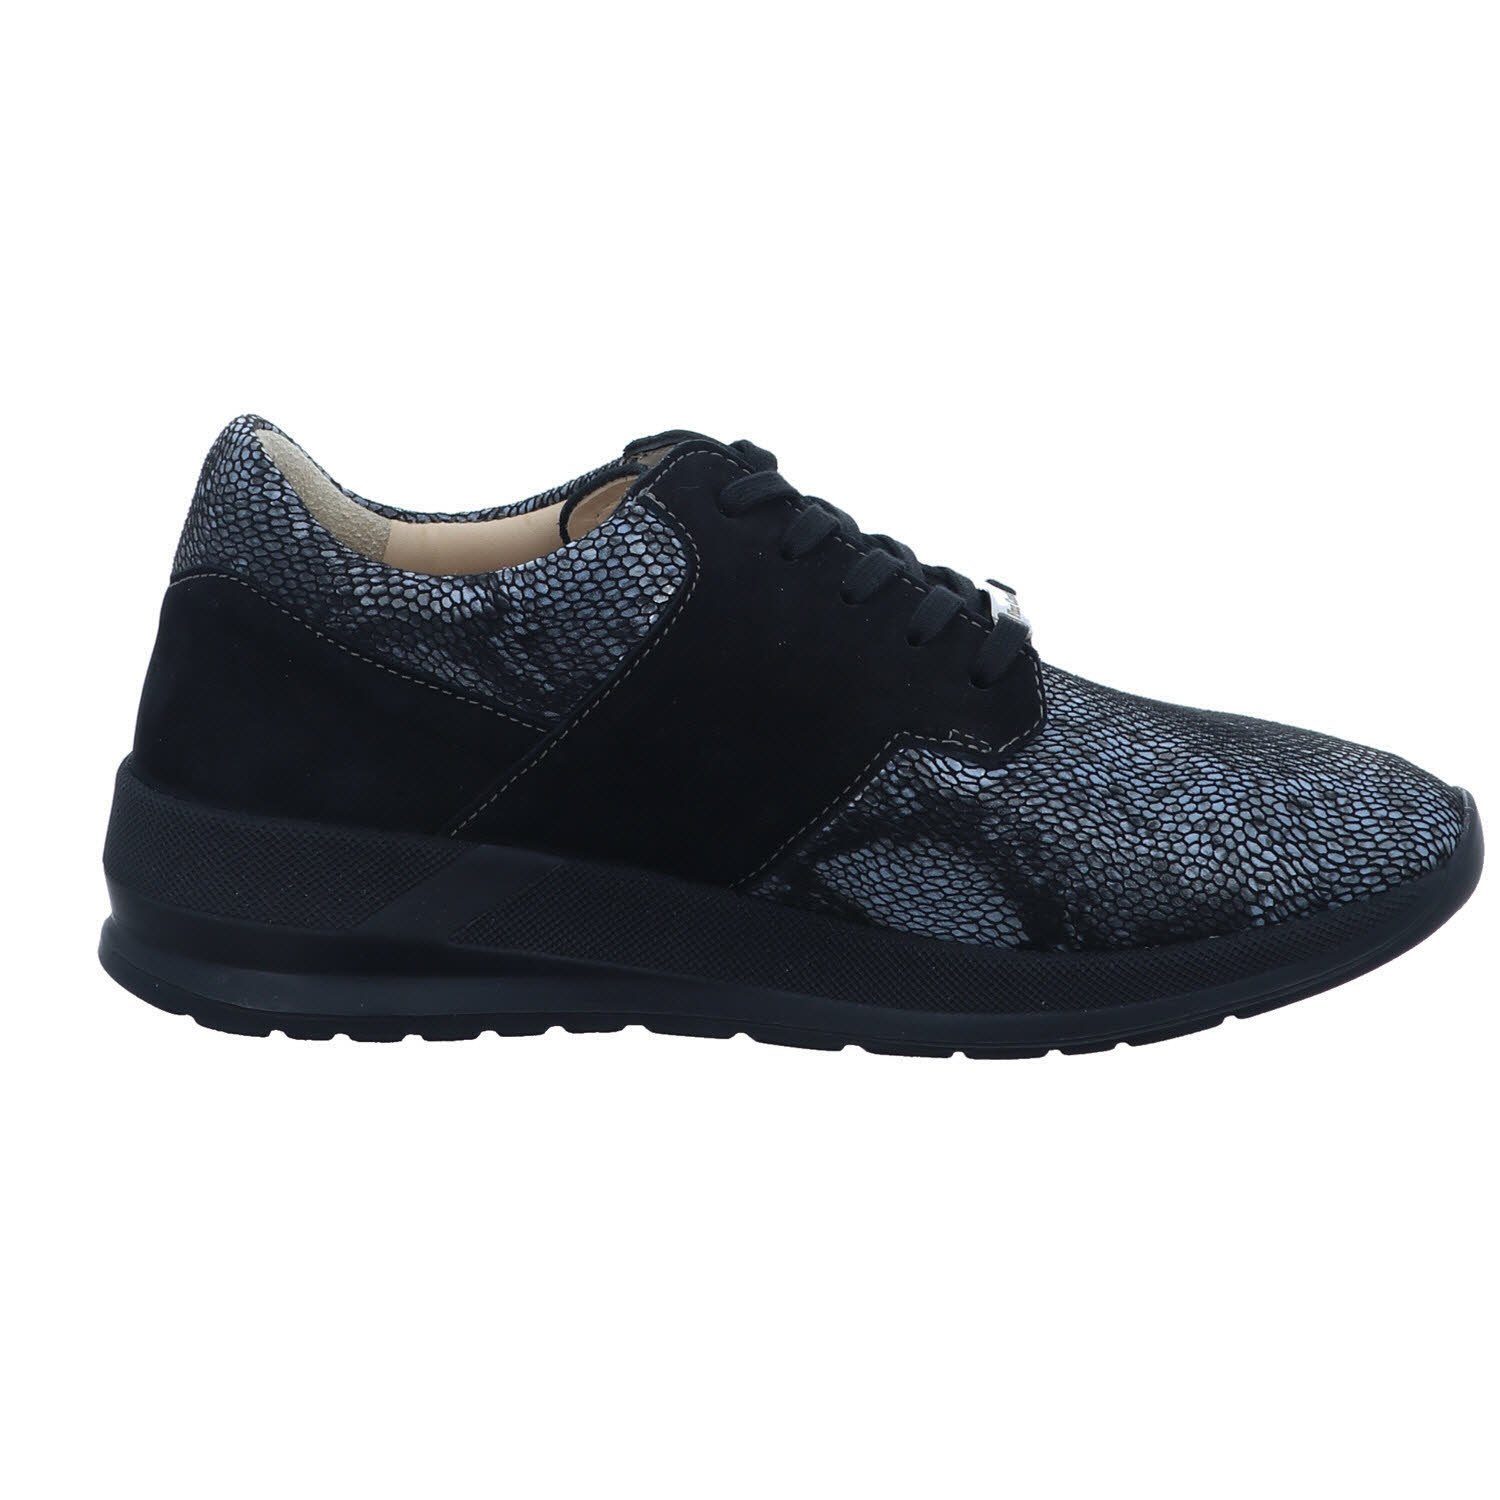 Finn Comfort Sneaker nero/black